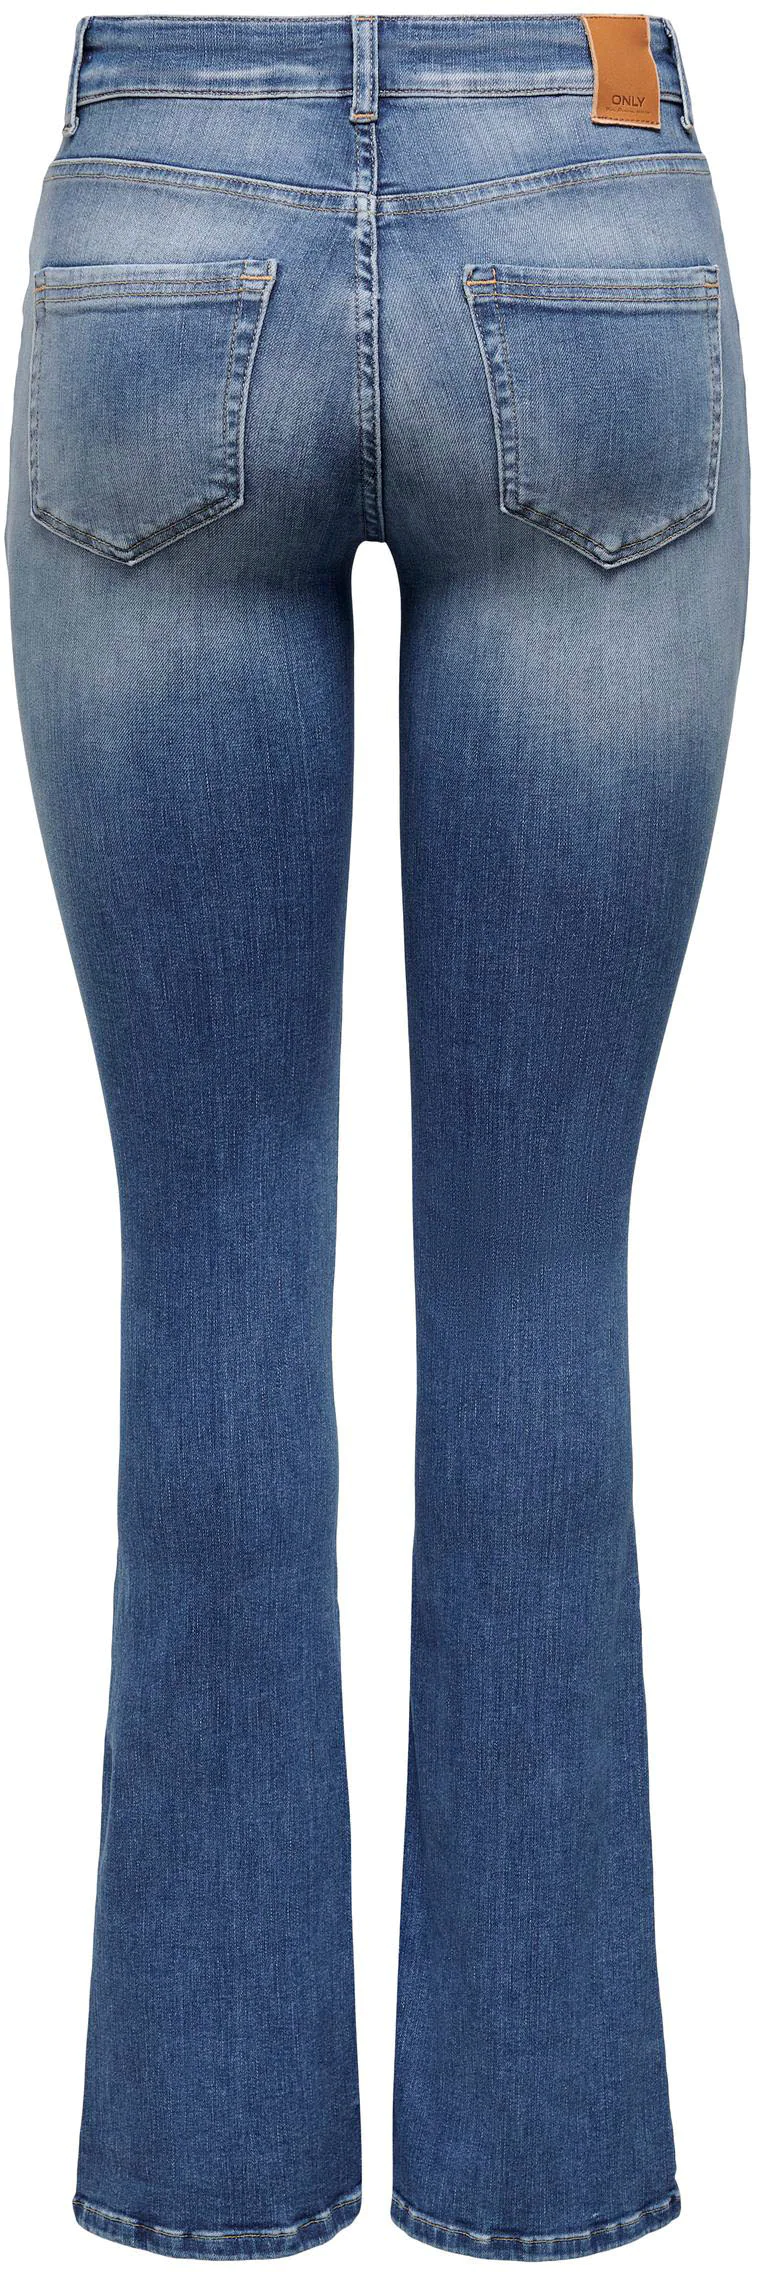 Only Damen Jeans 15223514 günstig online kaufen